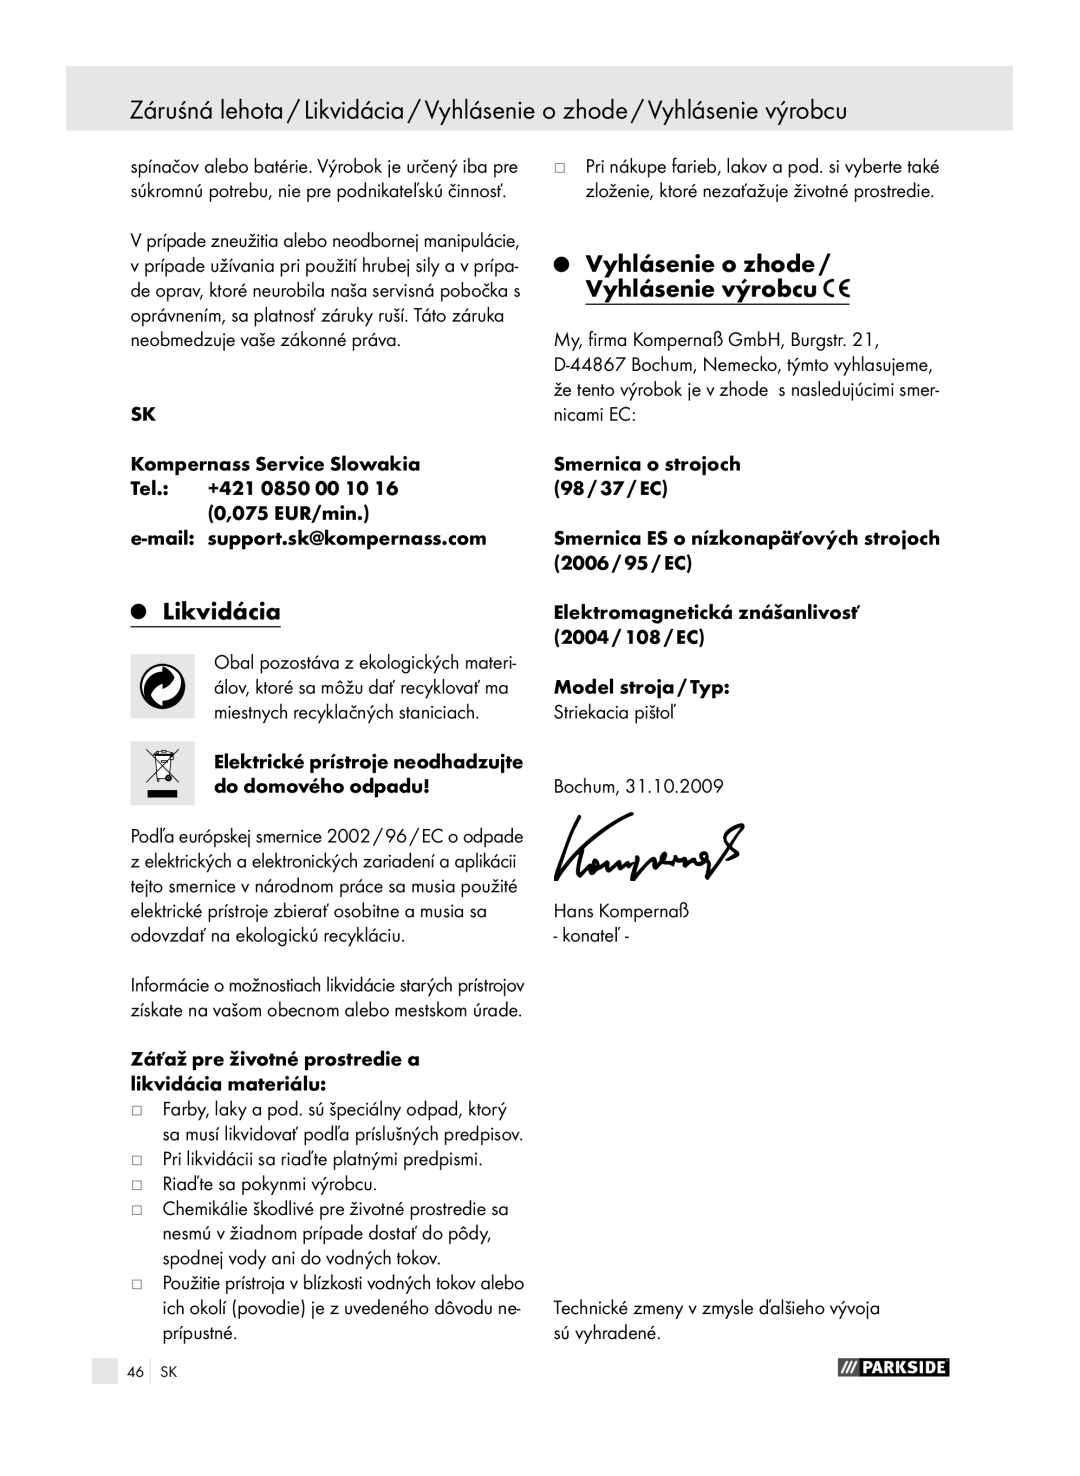 Parkside PFSP 100 Likvidácia, Vyhlásenie o zhode / Vyhlásenie výrobcu, Záťaž pre životné prostredie a likvidácia materiálu 